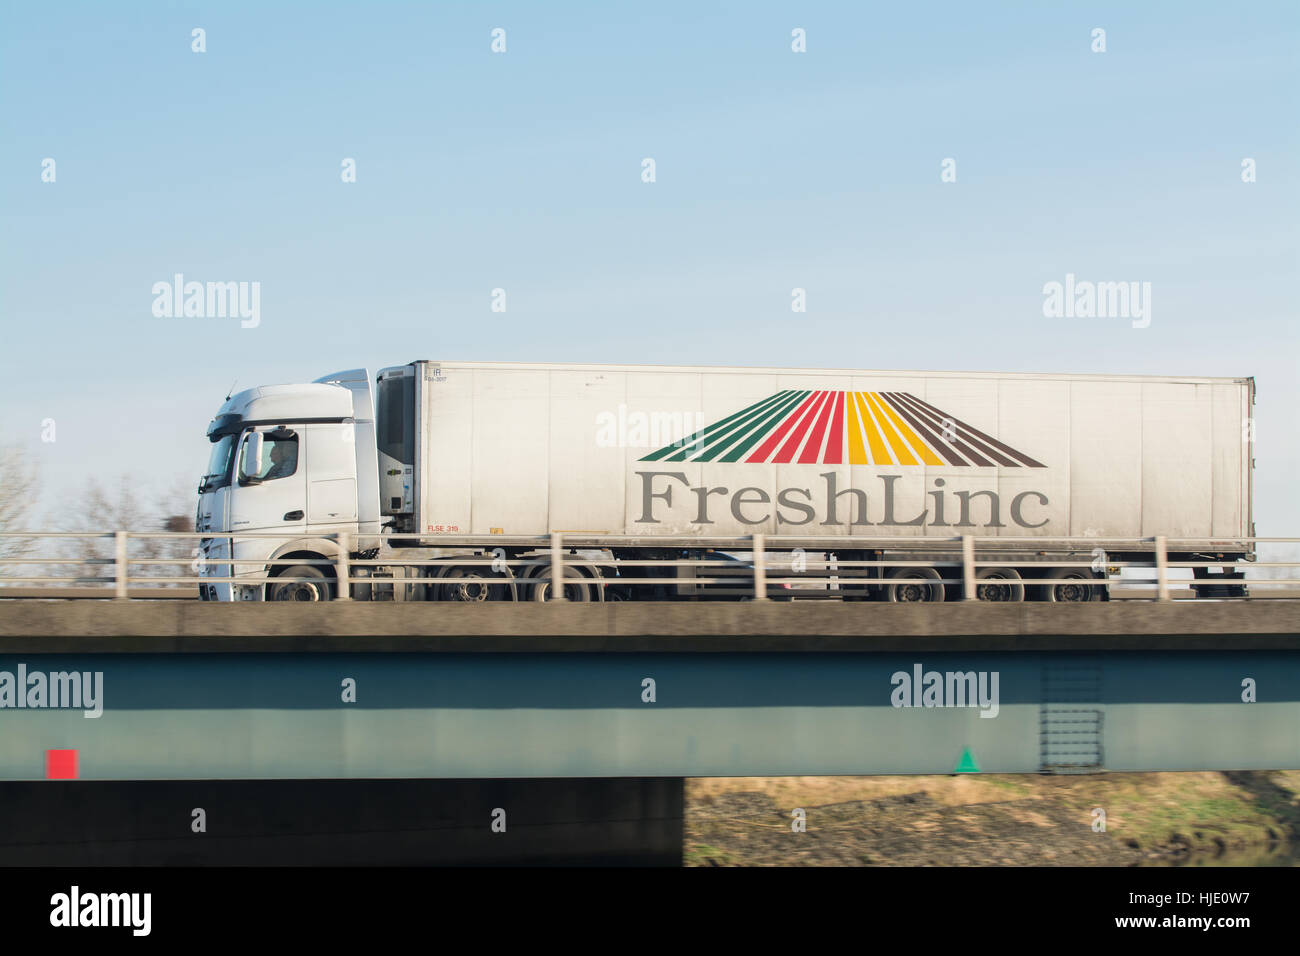 Freshlinc camion distribution à température contrôlée - Écosse, Royaume-Uni Banque D'Images